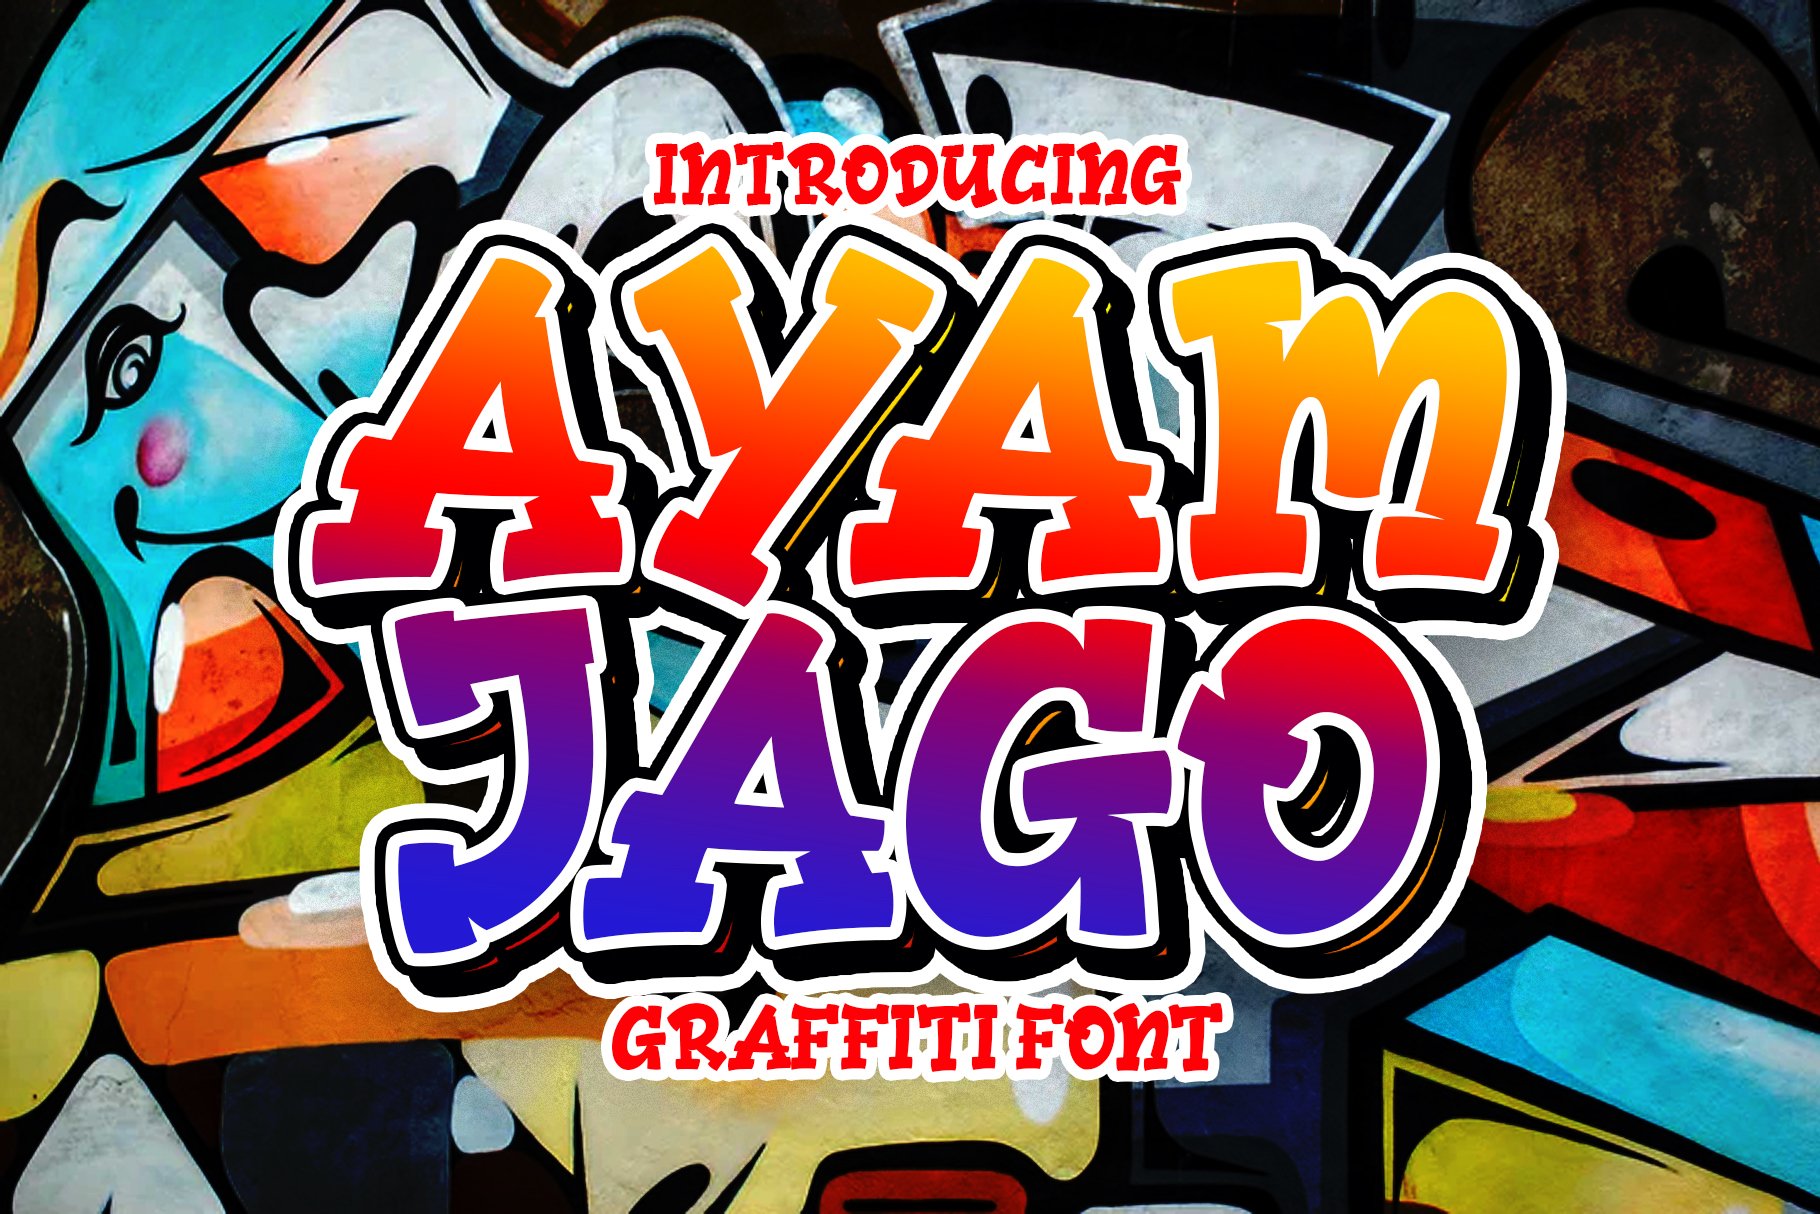 Ayam Jago | Graffiti Font cover image.